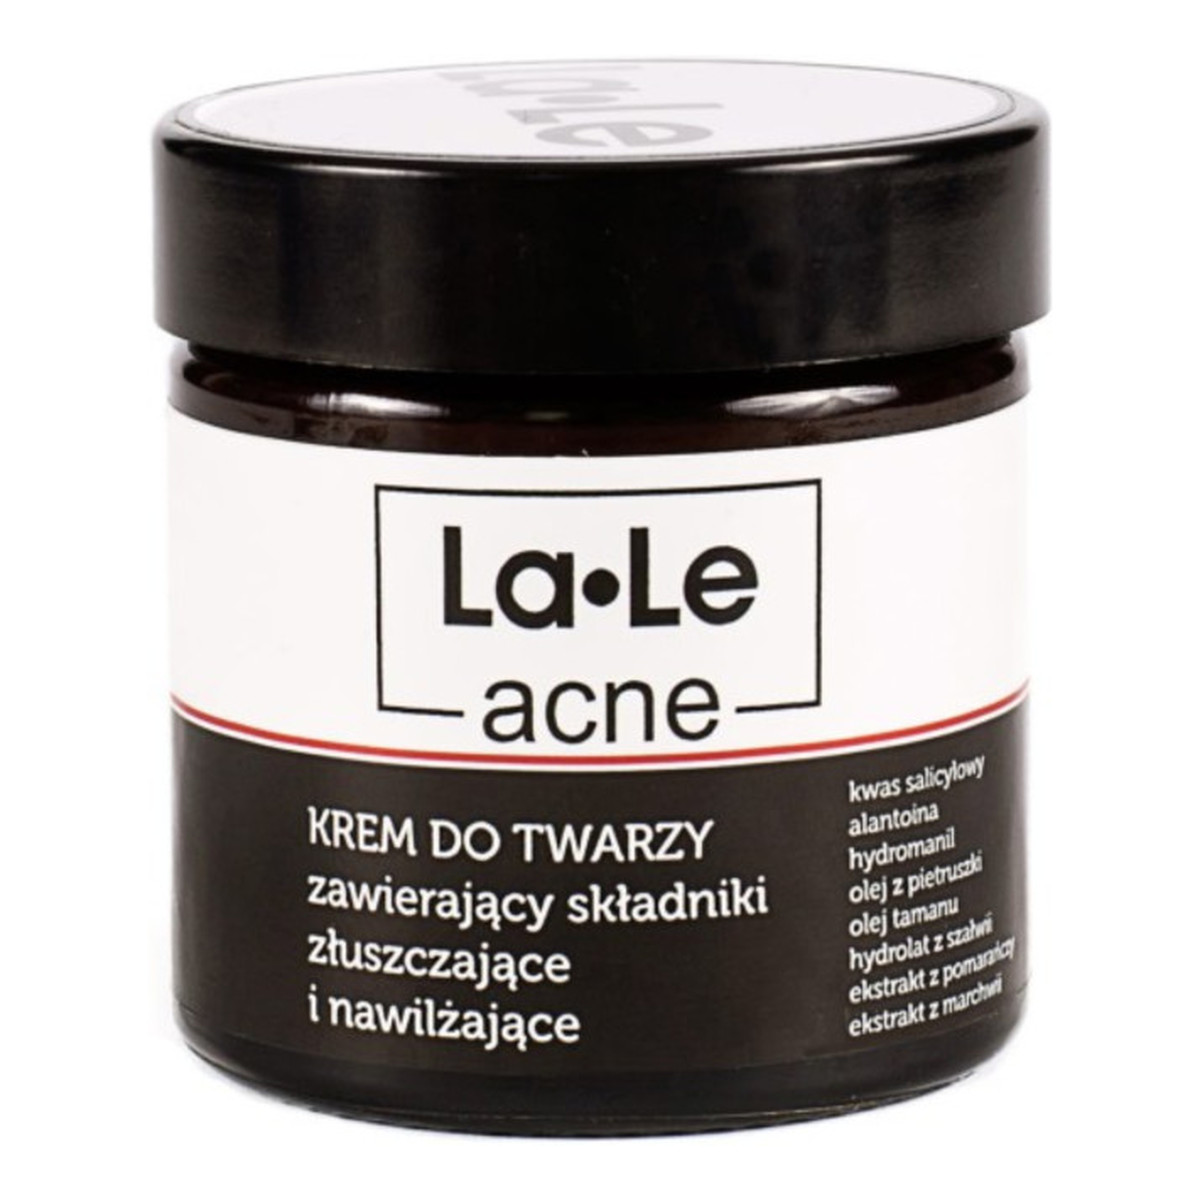 La-Le acne Krem do twarzy zawierający składniki złuszczające i nawilżające 60ml